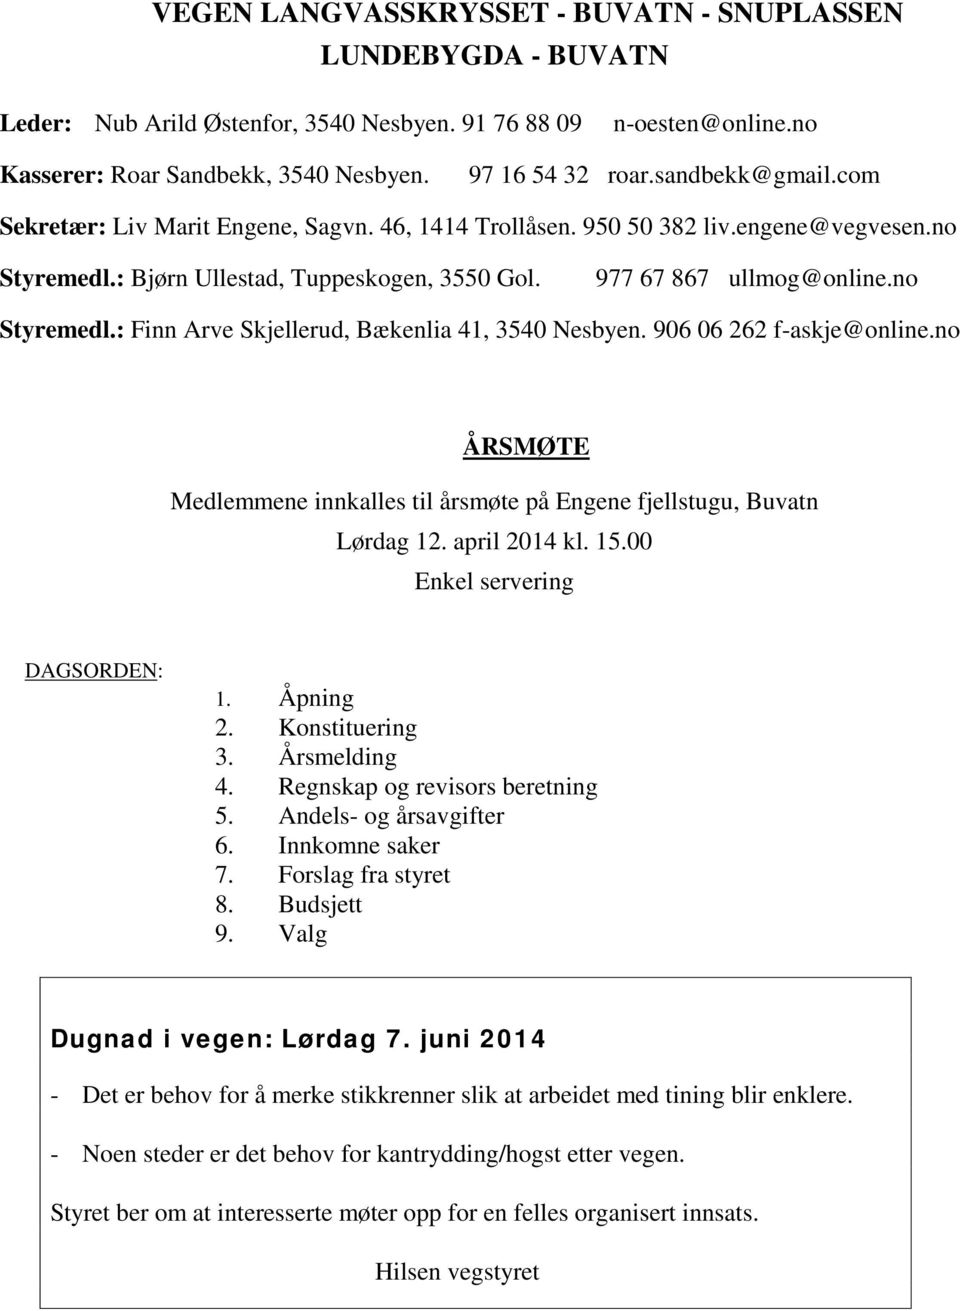 906 06 262 f-askje@online.no ÅRSMØTE Medlemmene innkalles til årsmøte på Engene fjellstugu, Buvatn Lørdag 12. april 2014 kl. 15.00 Enkel servering DAGSORDEN: 1. Åpning 2. Konstituering 3.